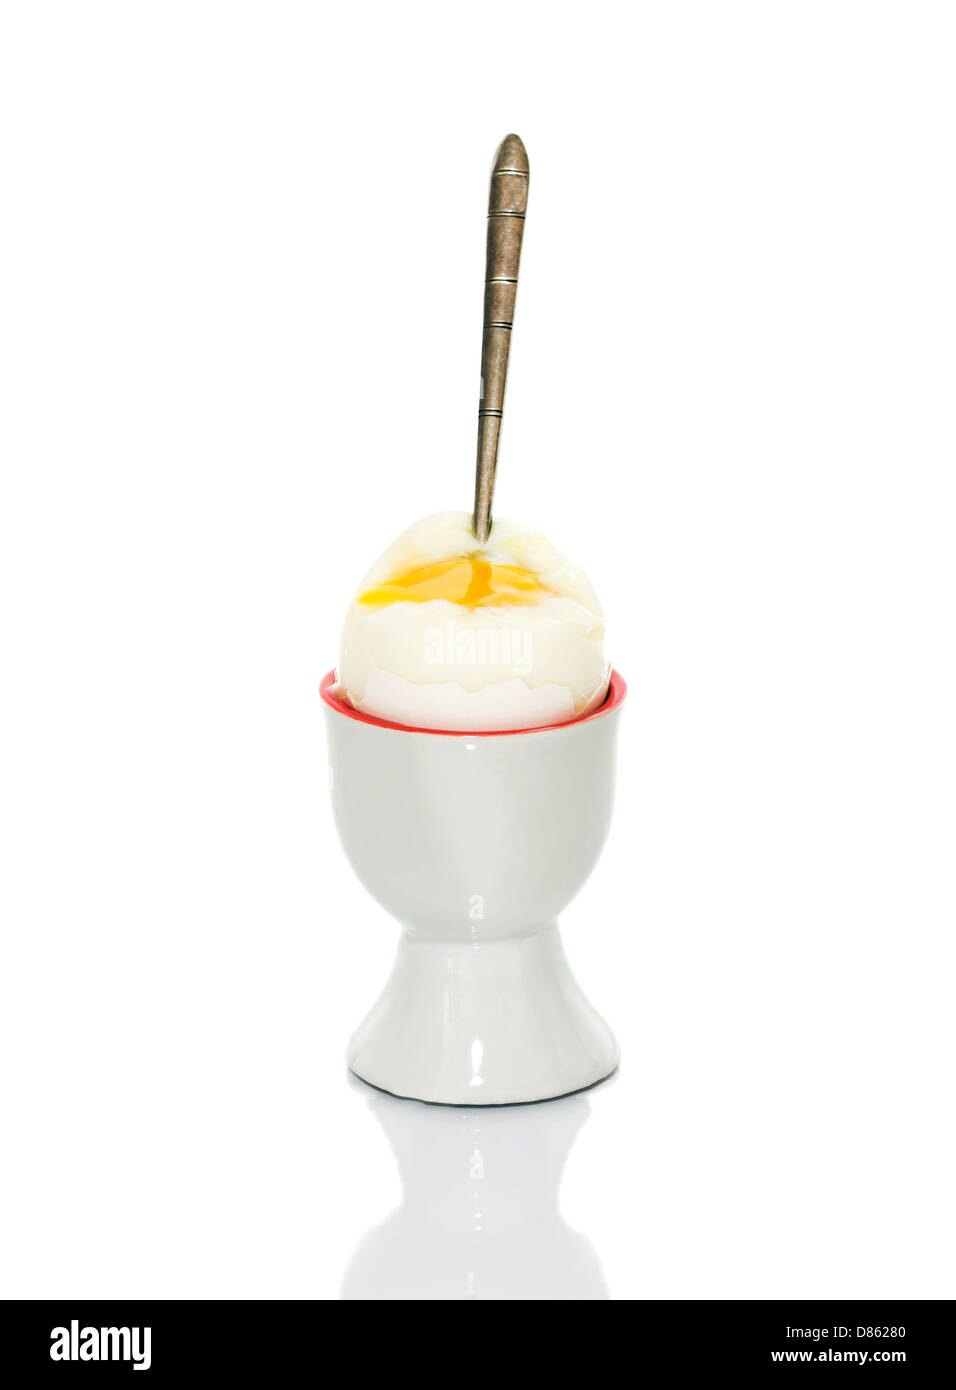 Supporto in ceramica per le uova con uovo e cucchiaio Foto Stock